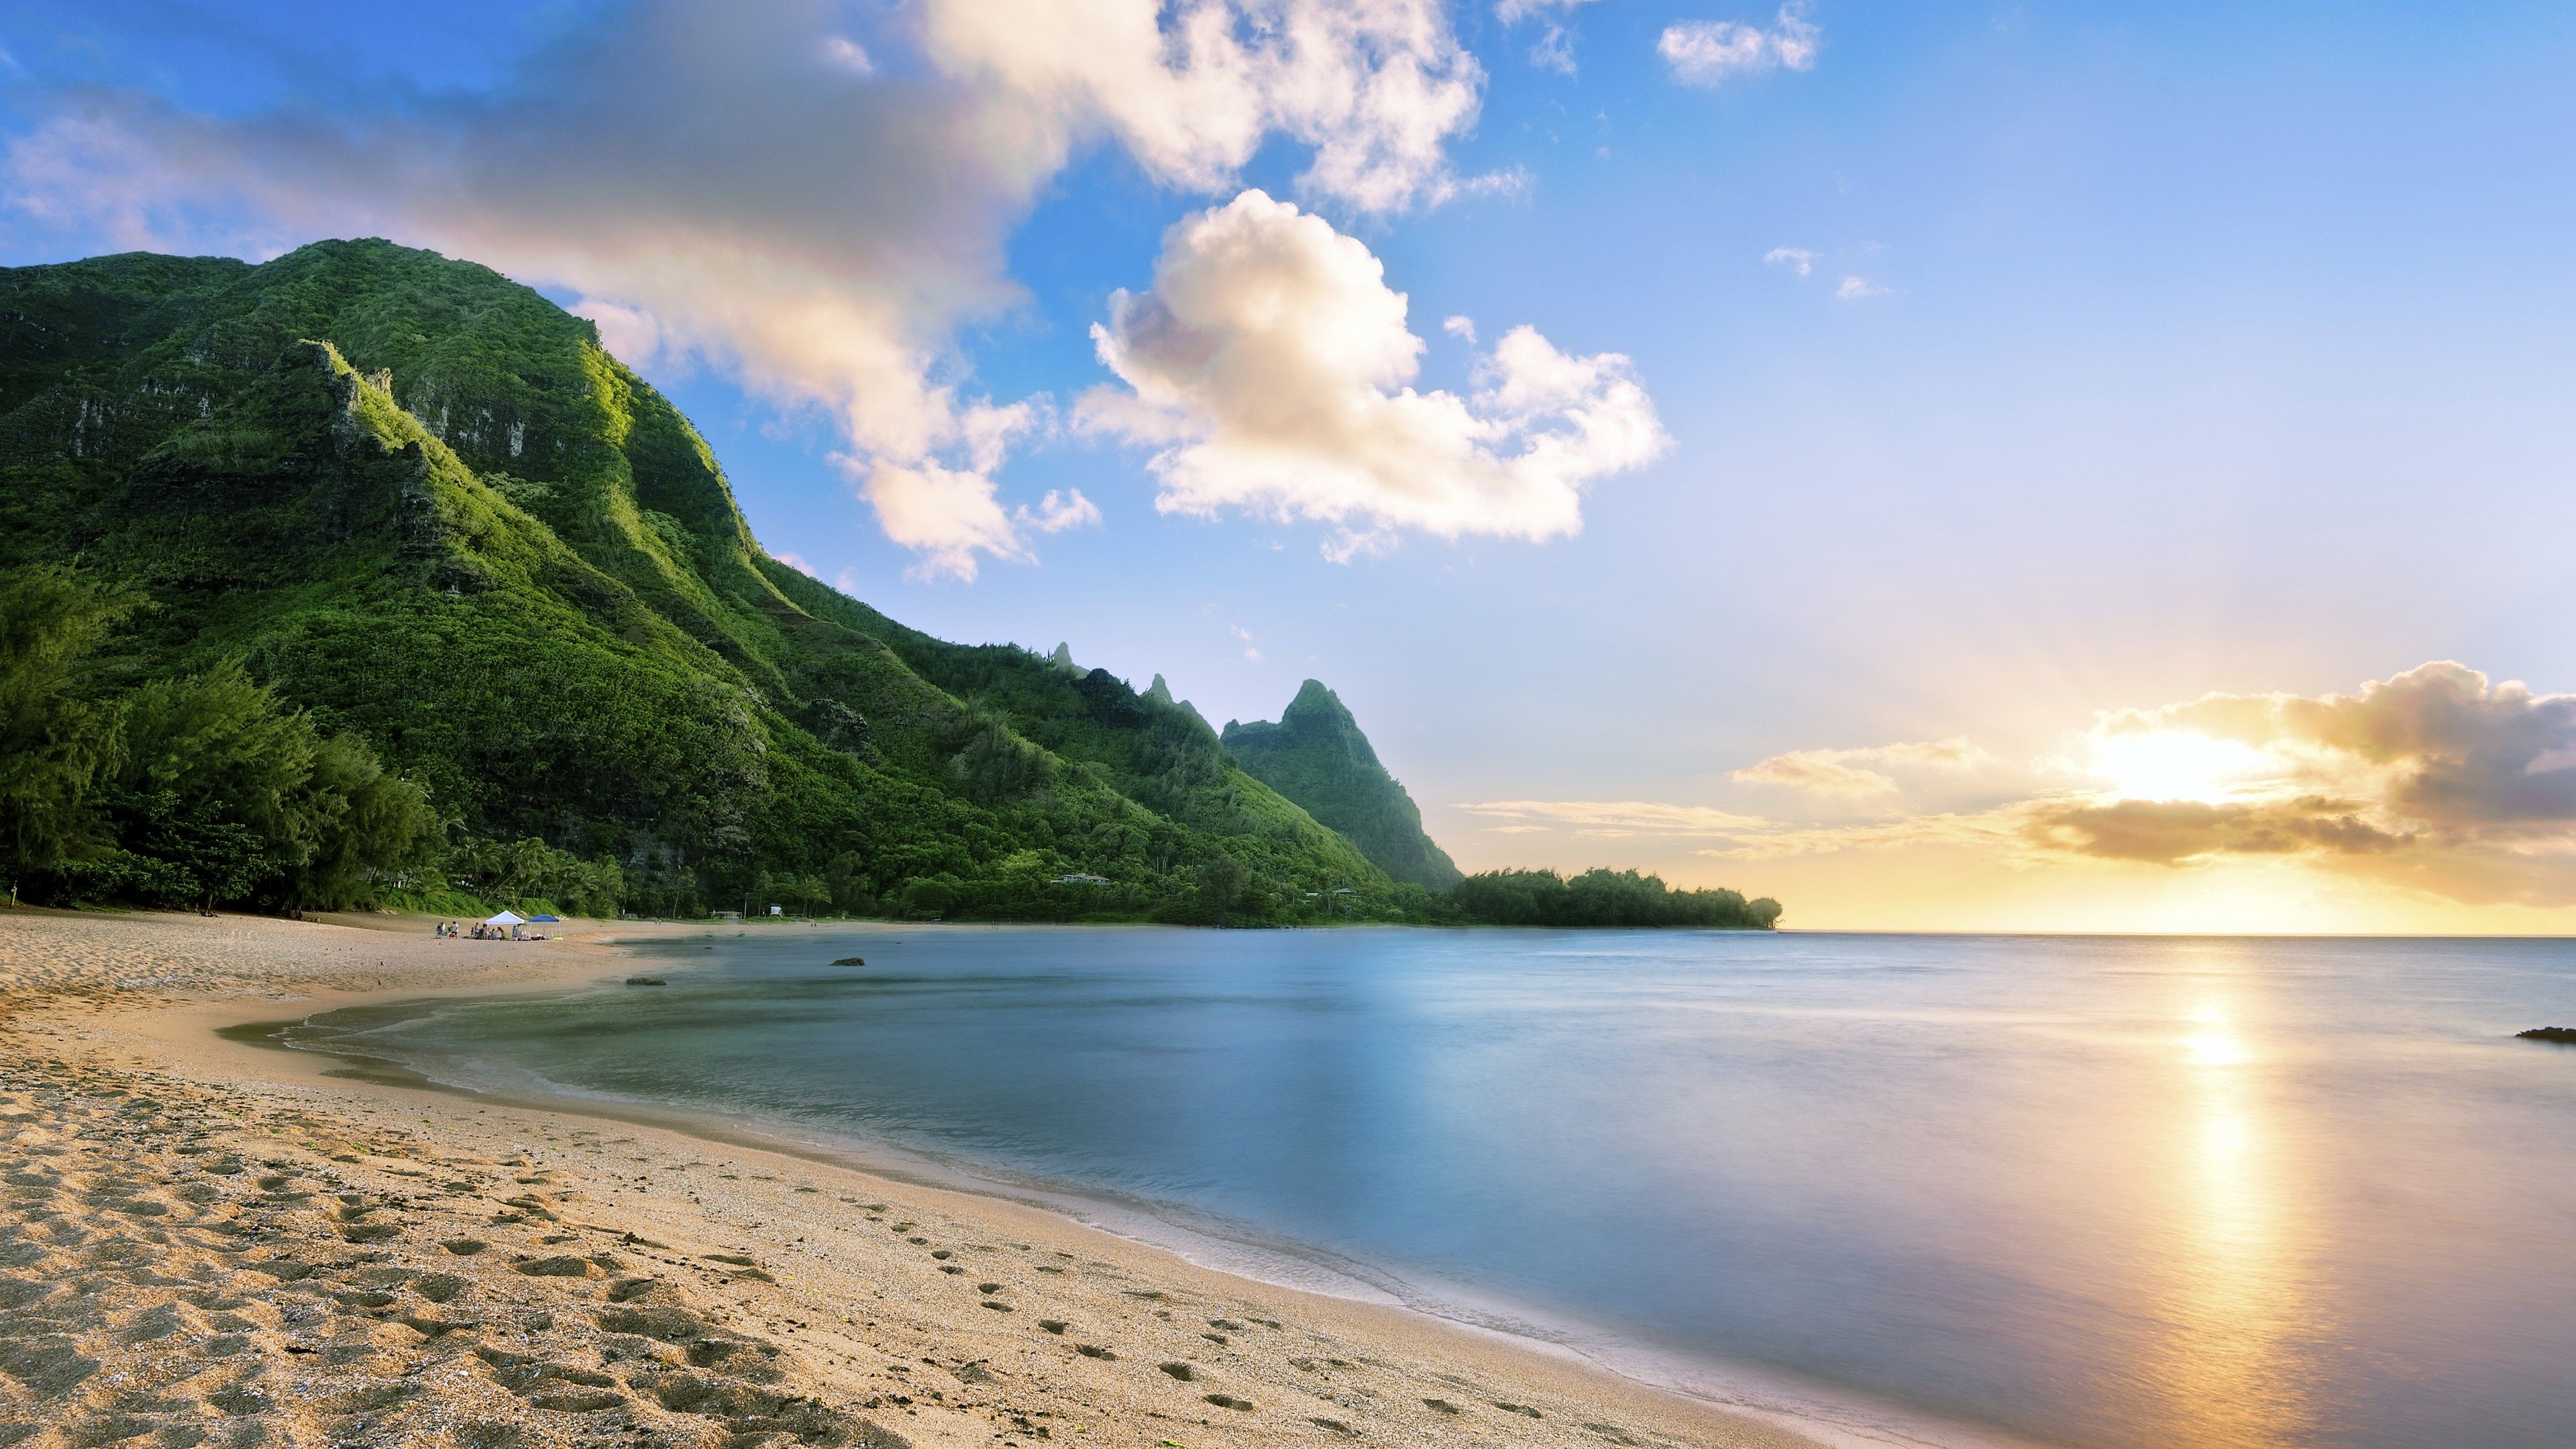 Maui, Hawaiianischer Ozean Wallpaper, 3840x2160 4K Desktop